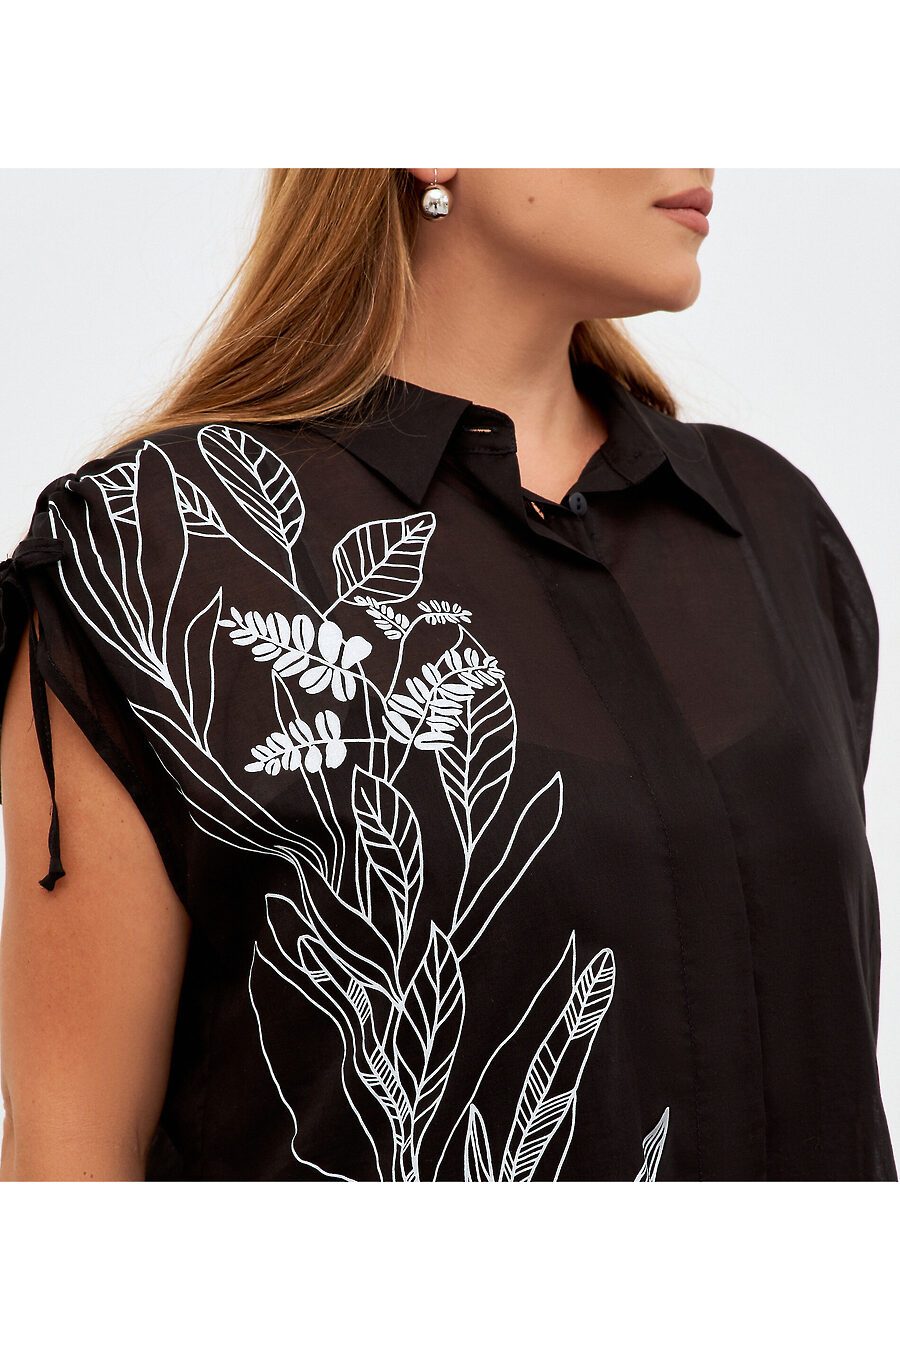 Комплект (туника, блузка) для женщин PANDA 796058 купить оптом от производителя. Совместная покупка женской одежды в OptMoyo